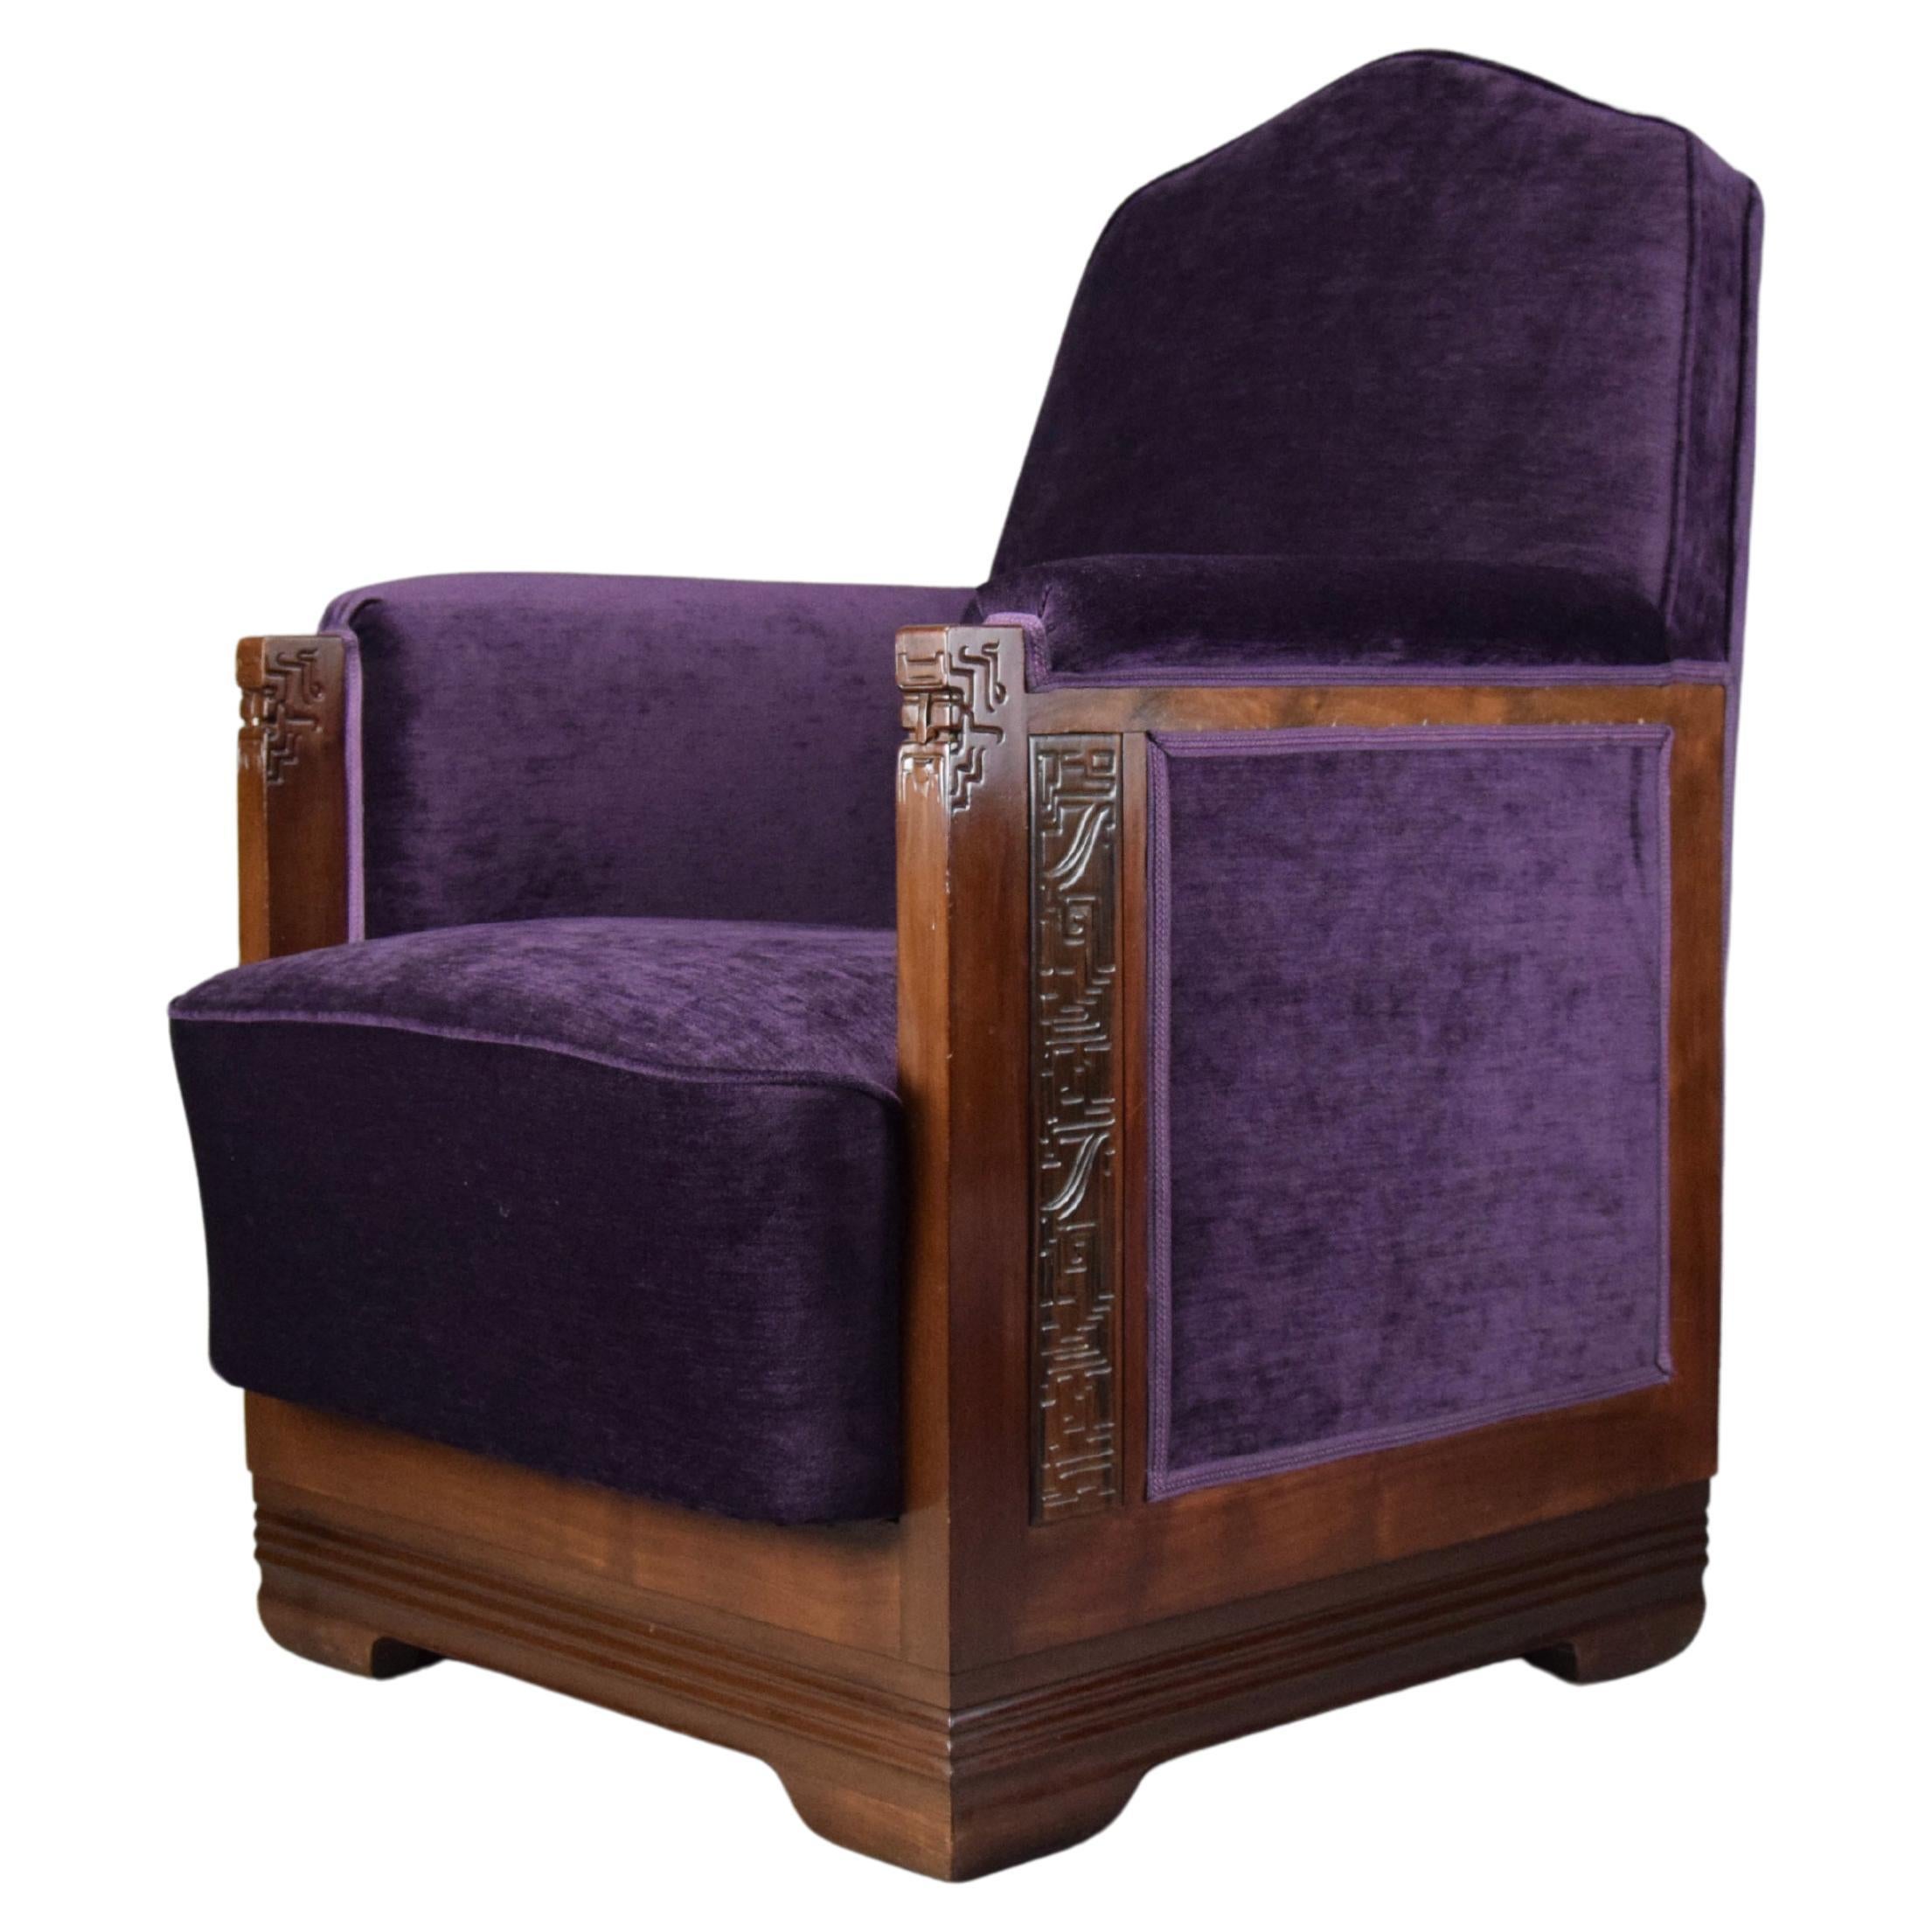 Art Deco Jatoba Holz und lila Samt Lounge Chair